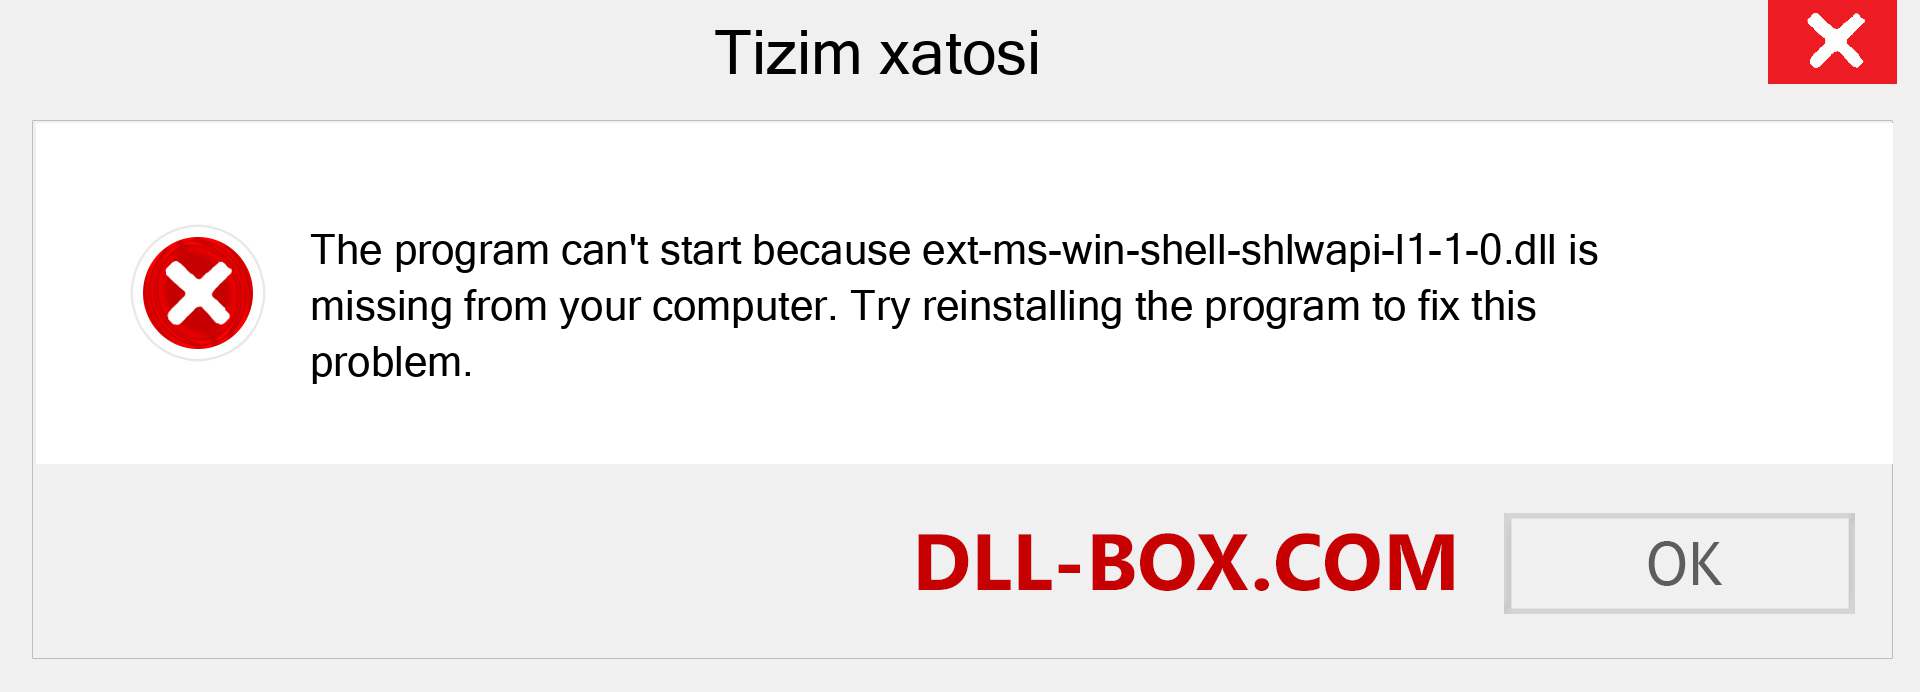 ext-ms-win-shell-shlwapi-l1-1-0.dll fayli yo'qolganmi?. Windows 7, 8, 10 uchun yuklab olish - Windowsda ext-ms-win-shell-shlwapi-l1-1-0 dll etishmayotgan xatoni tuzating, rasmlar, rasmlar